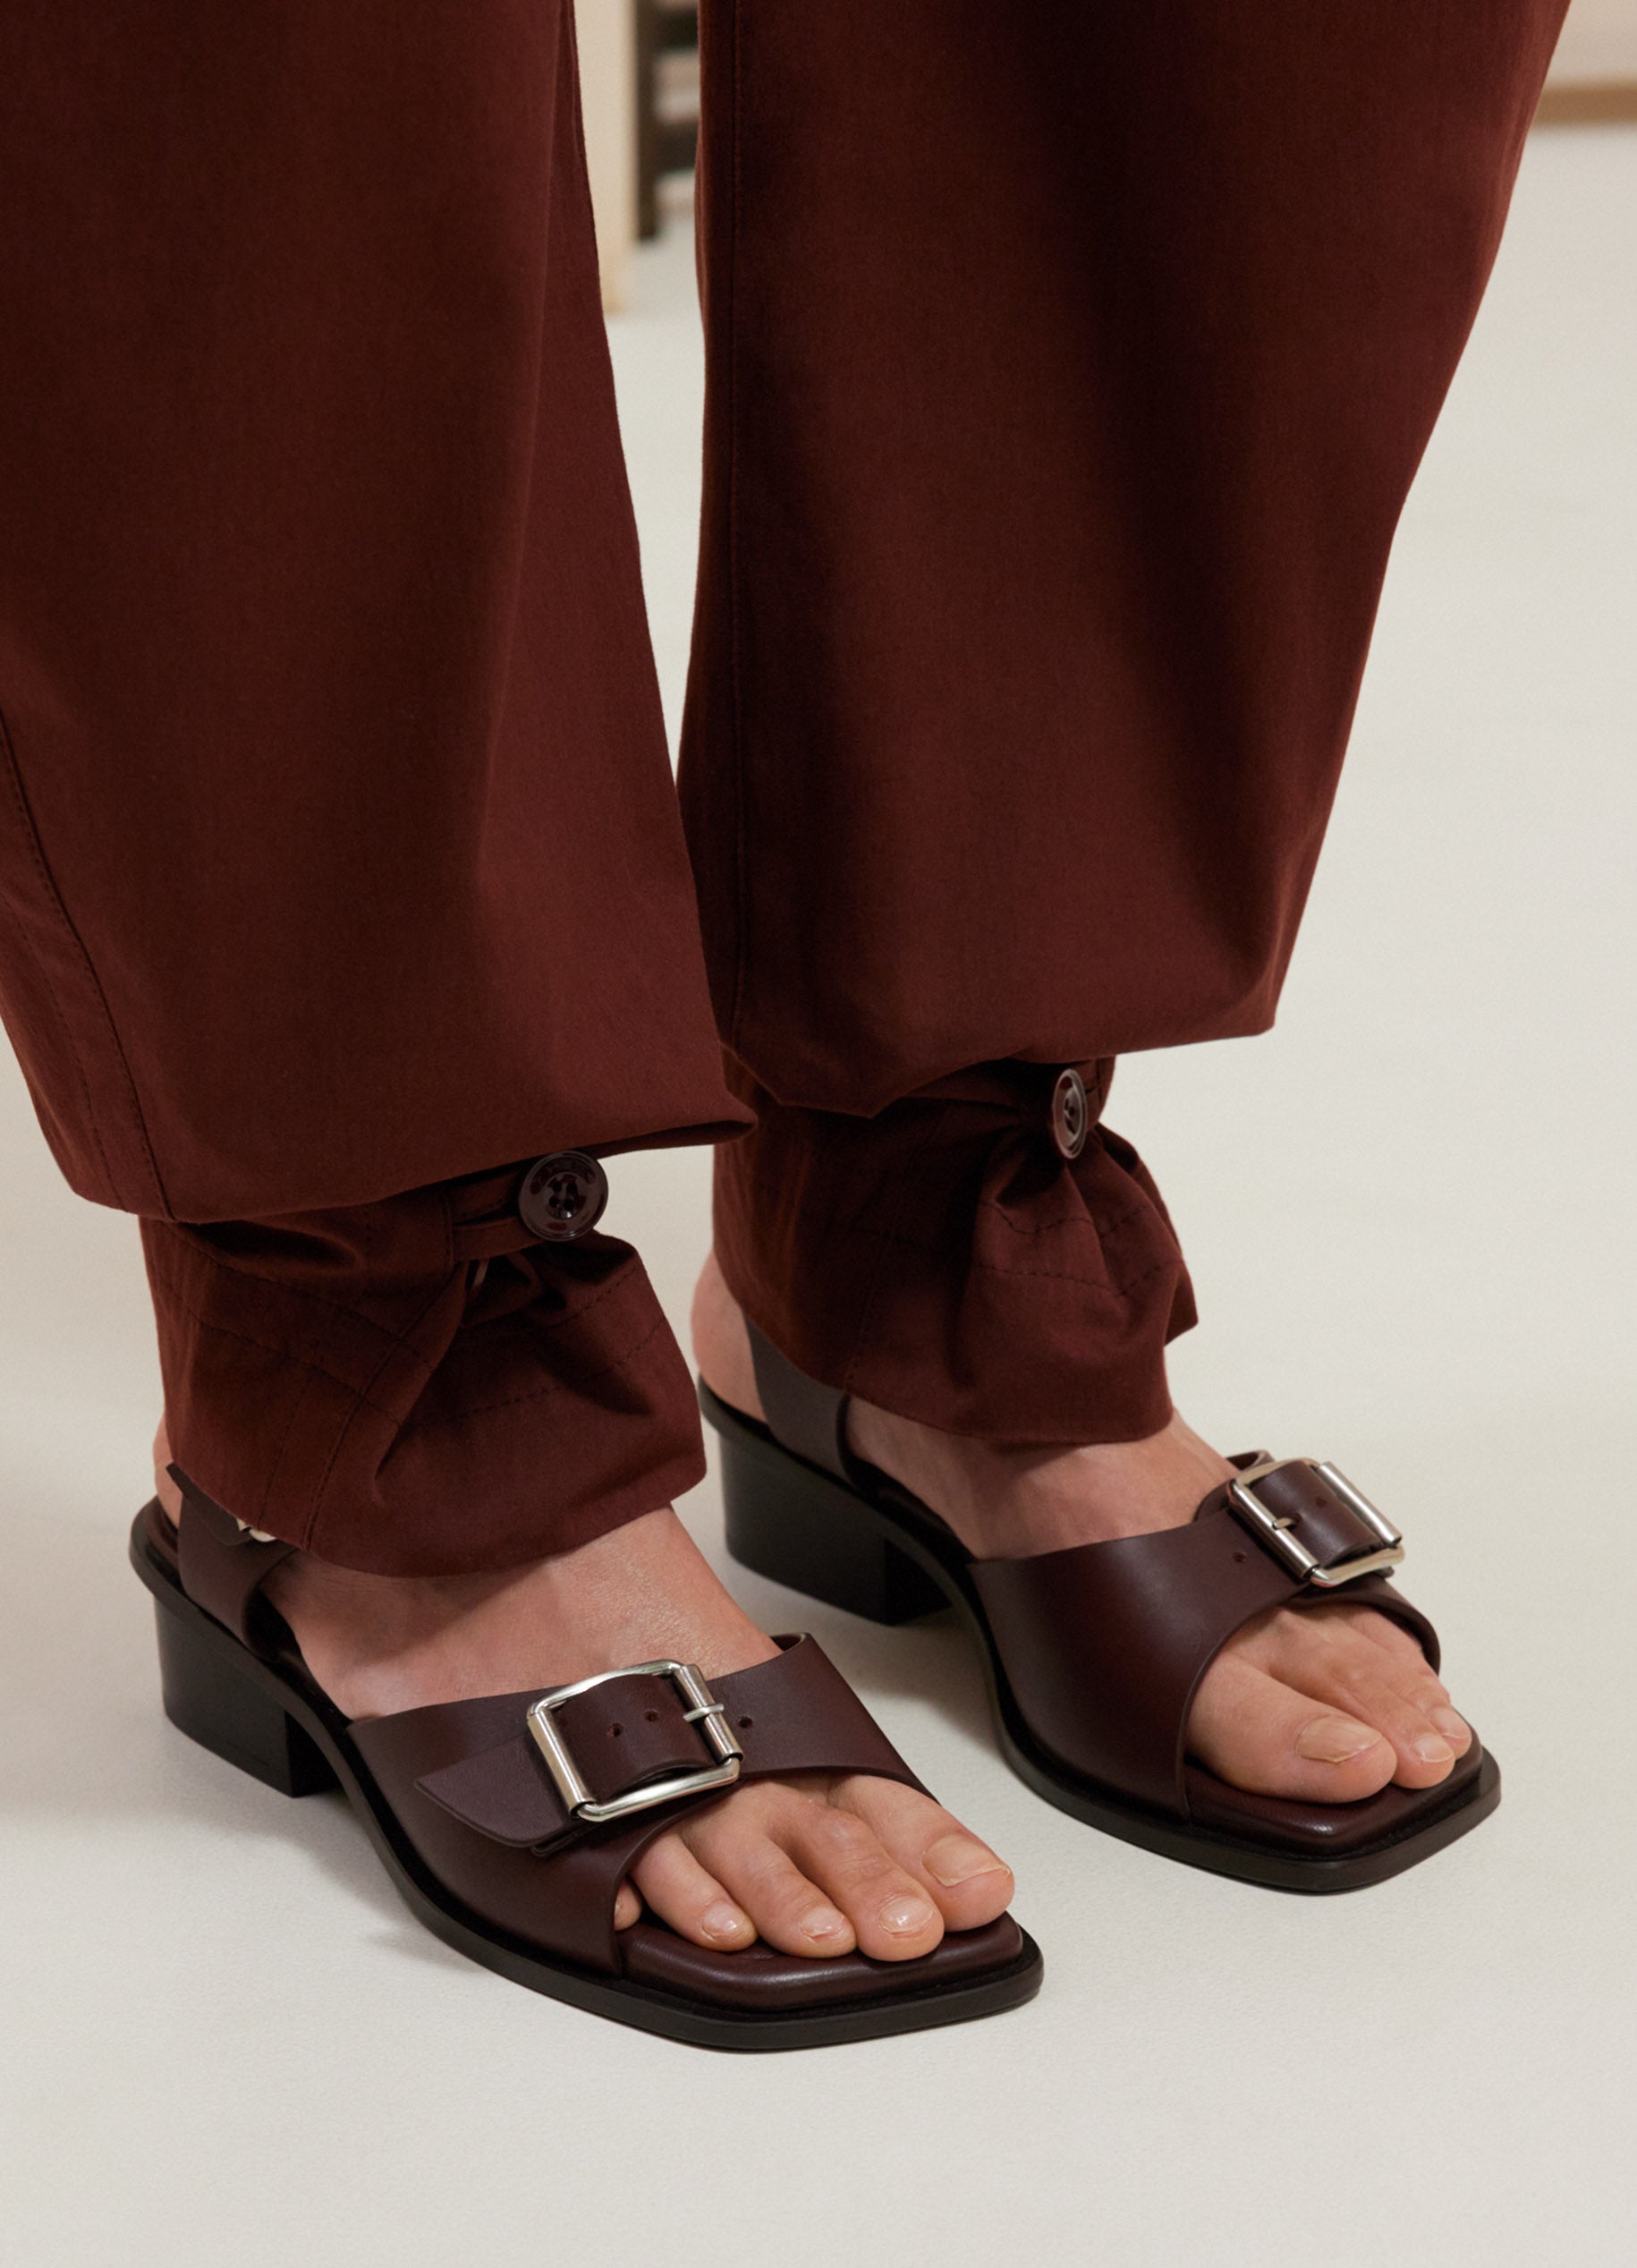 Dolce Vita Open Toe Sandals Nolin High Heel, $170 | Bloomingdale's |  Lookastic